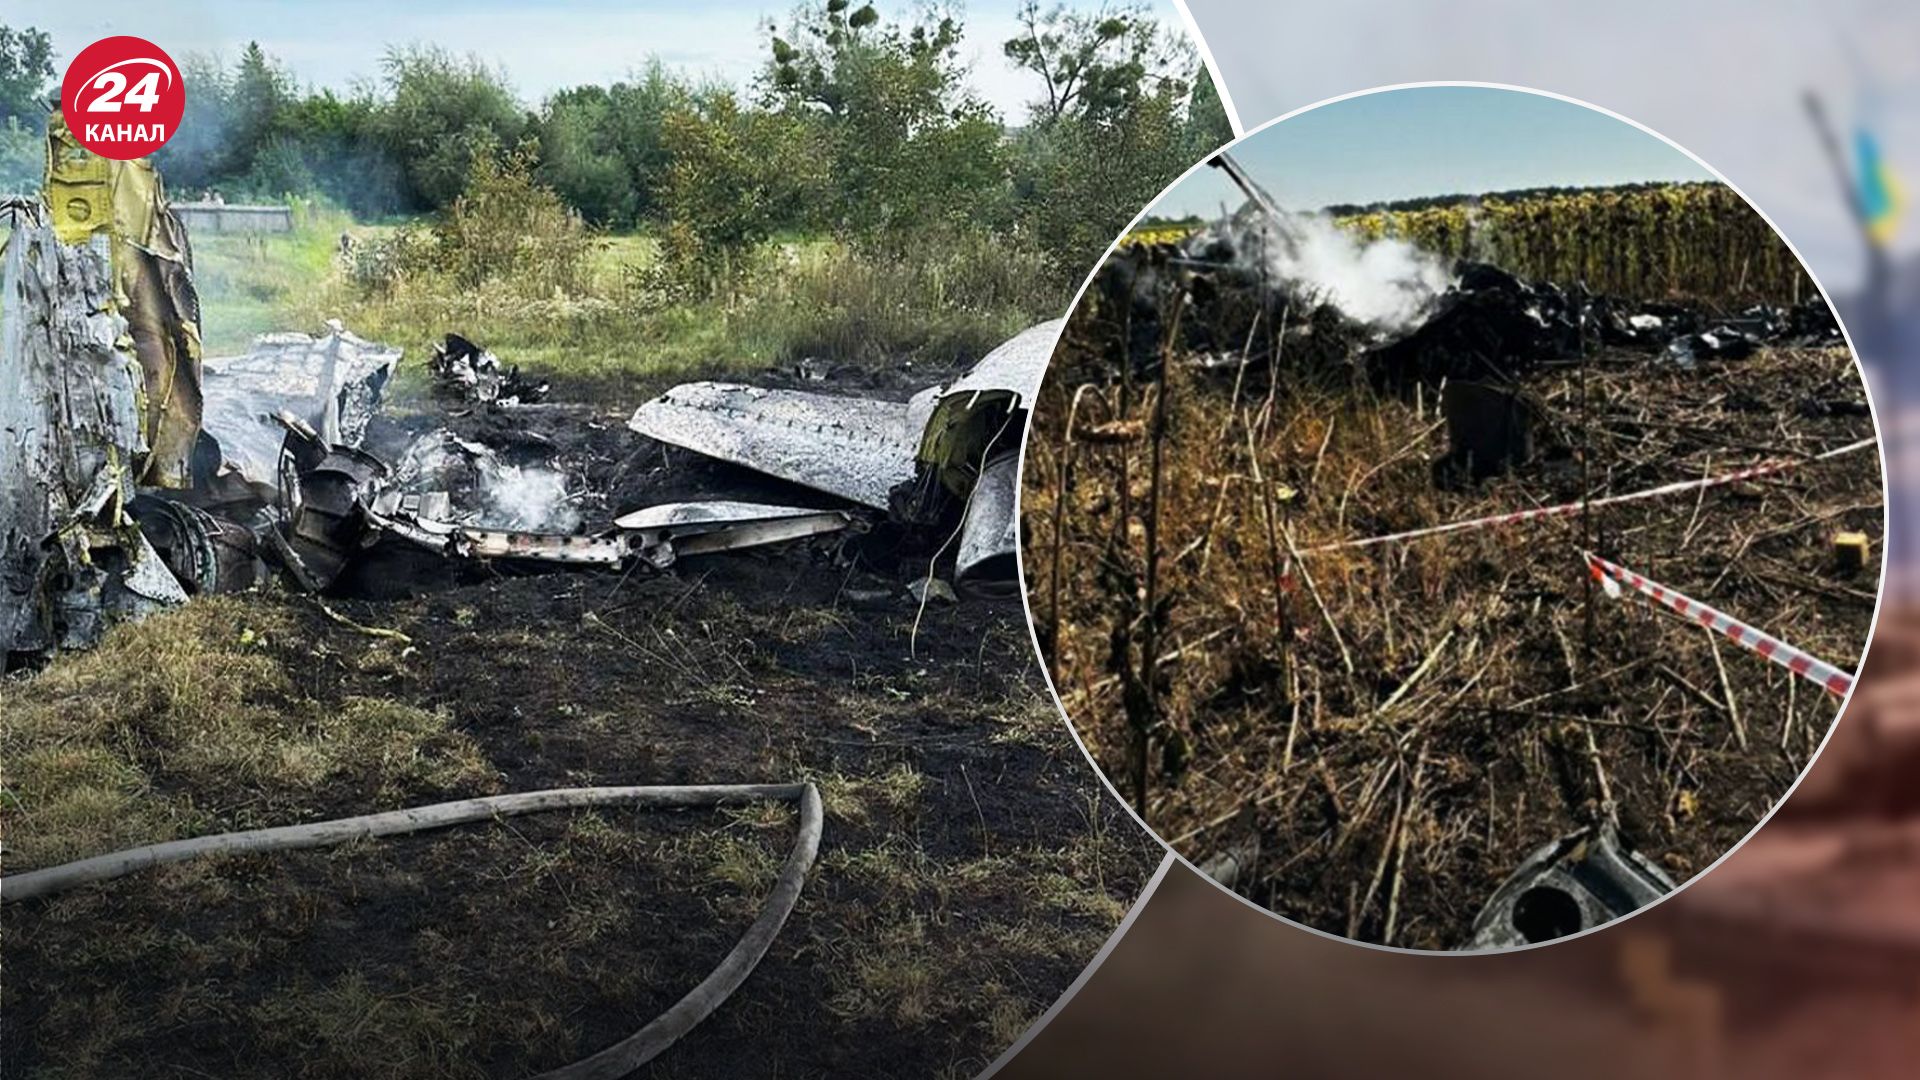 Ніяк не пов'язано з рішенням щодо F-16, – Подоляк про низку смертельних авіакатастроф в Україні - 24 Канал